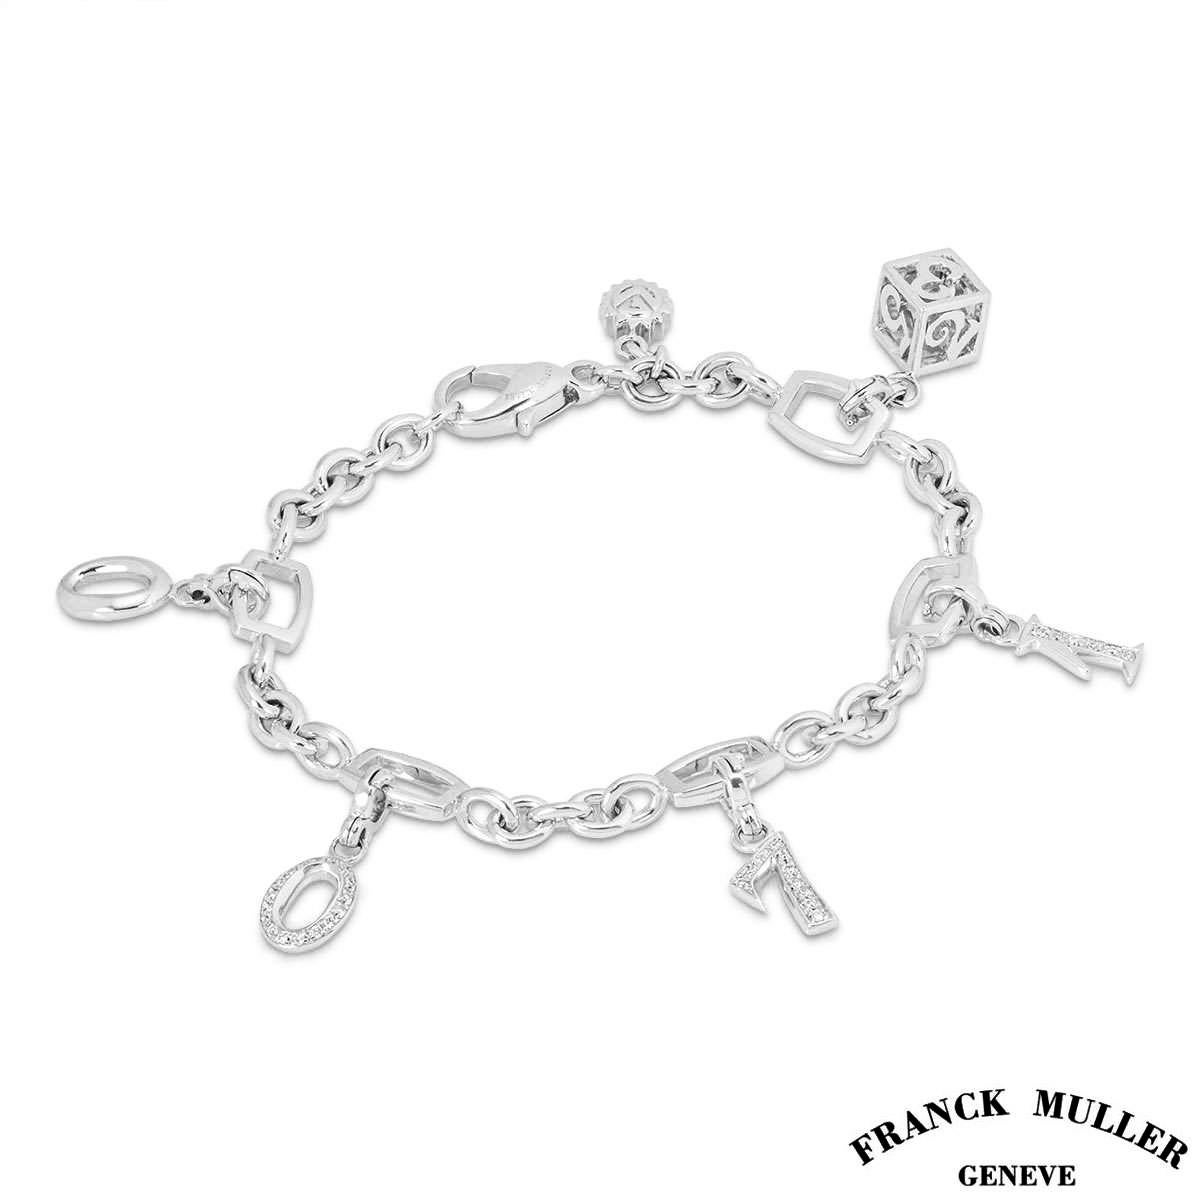 Un bracelet à charme en or blanc 18 carats de la collection Talisman de Franck Muller. Le corps du bracelet est constitué d'une chaîne à maillons traçants, sertie par intermittence en son centre de 5 intervalles rectangulaires ajourés et d'un petit